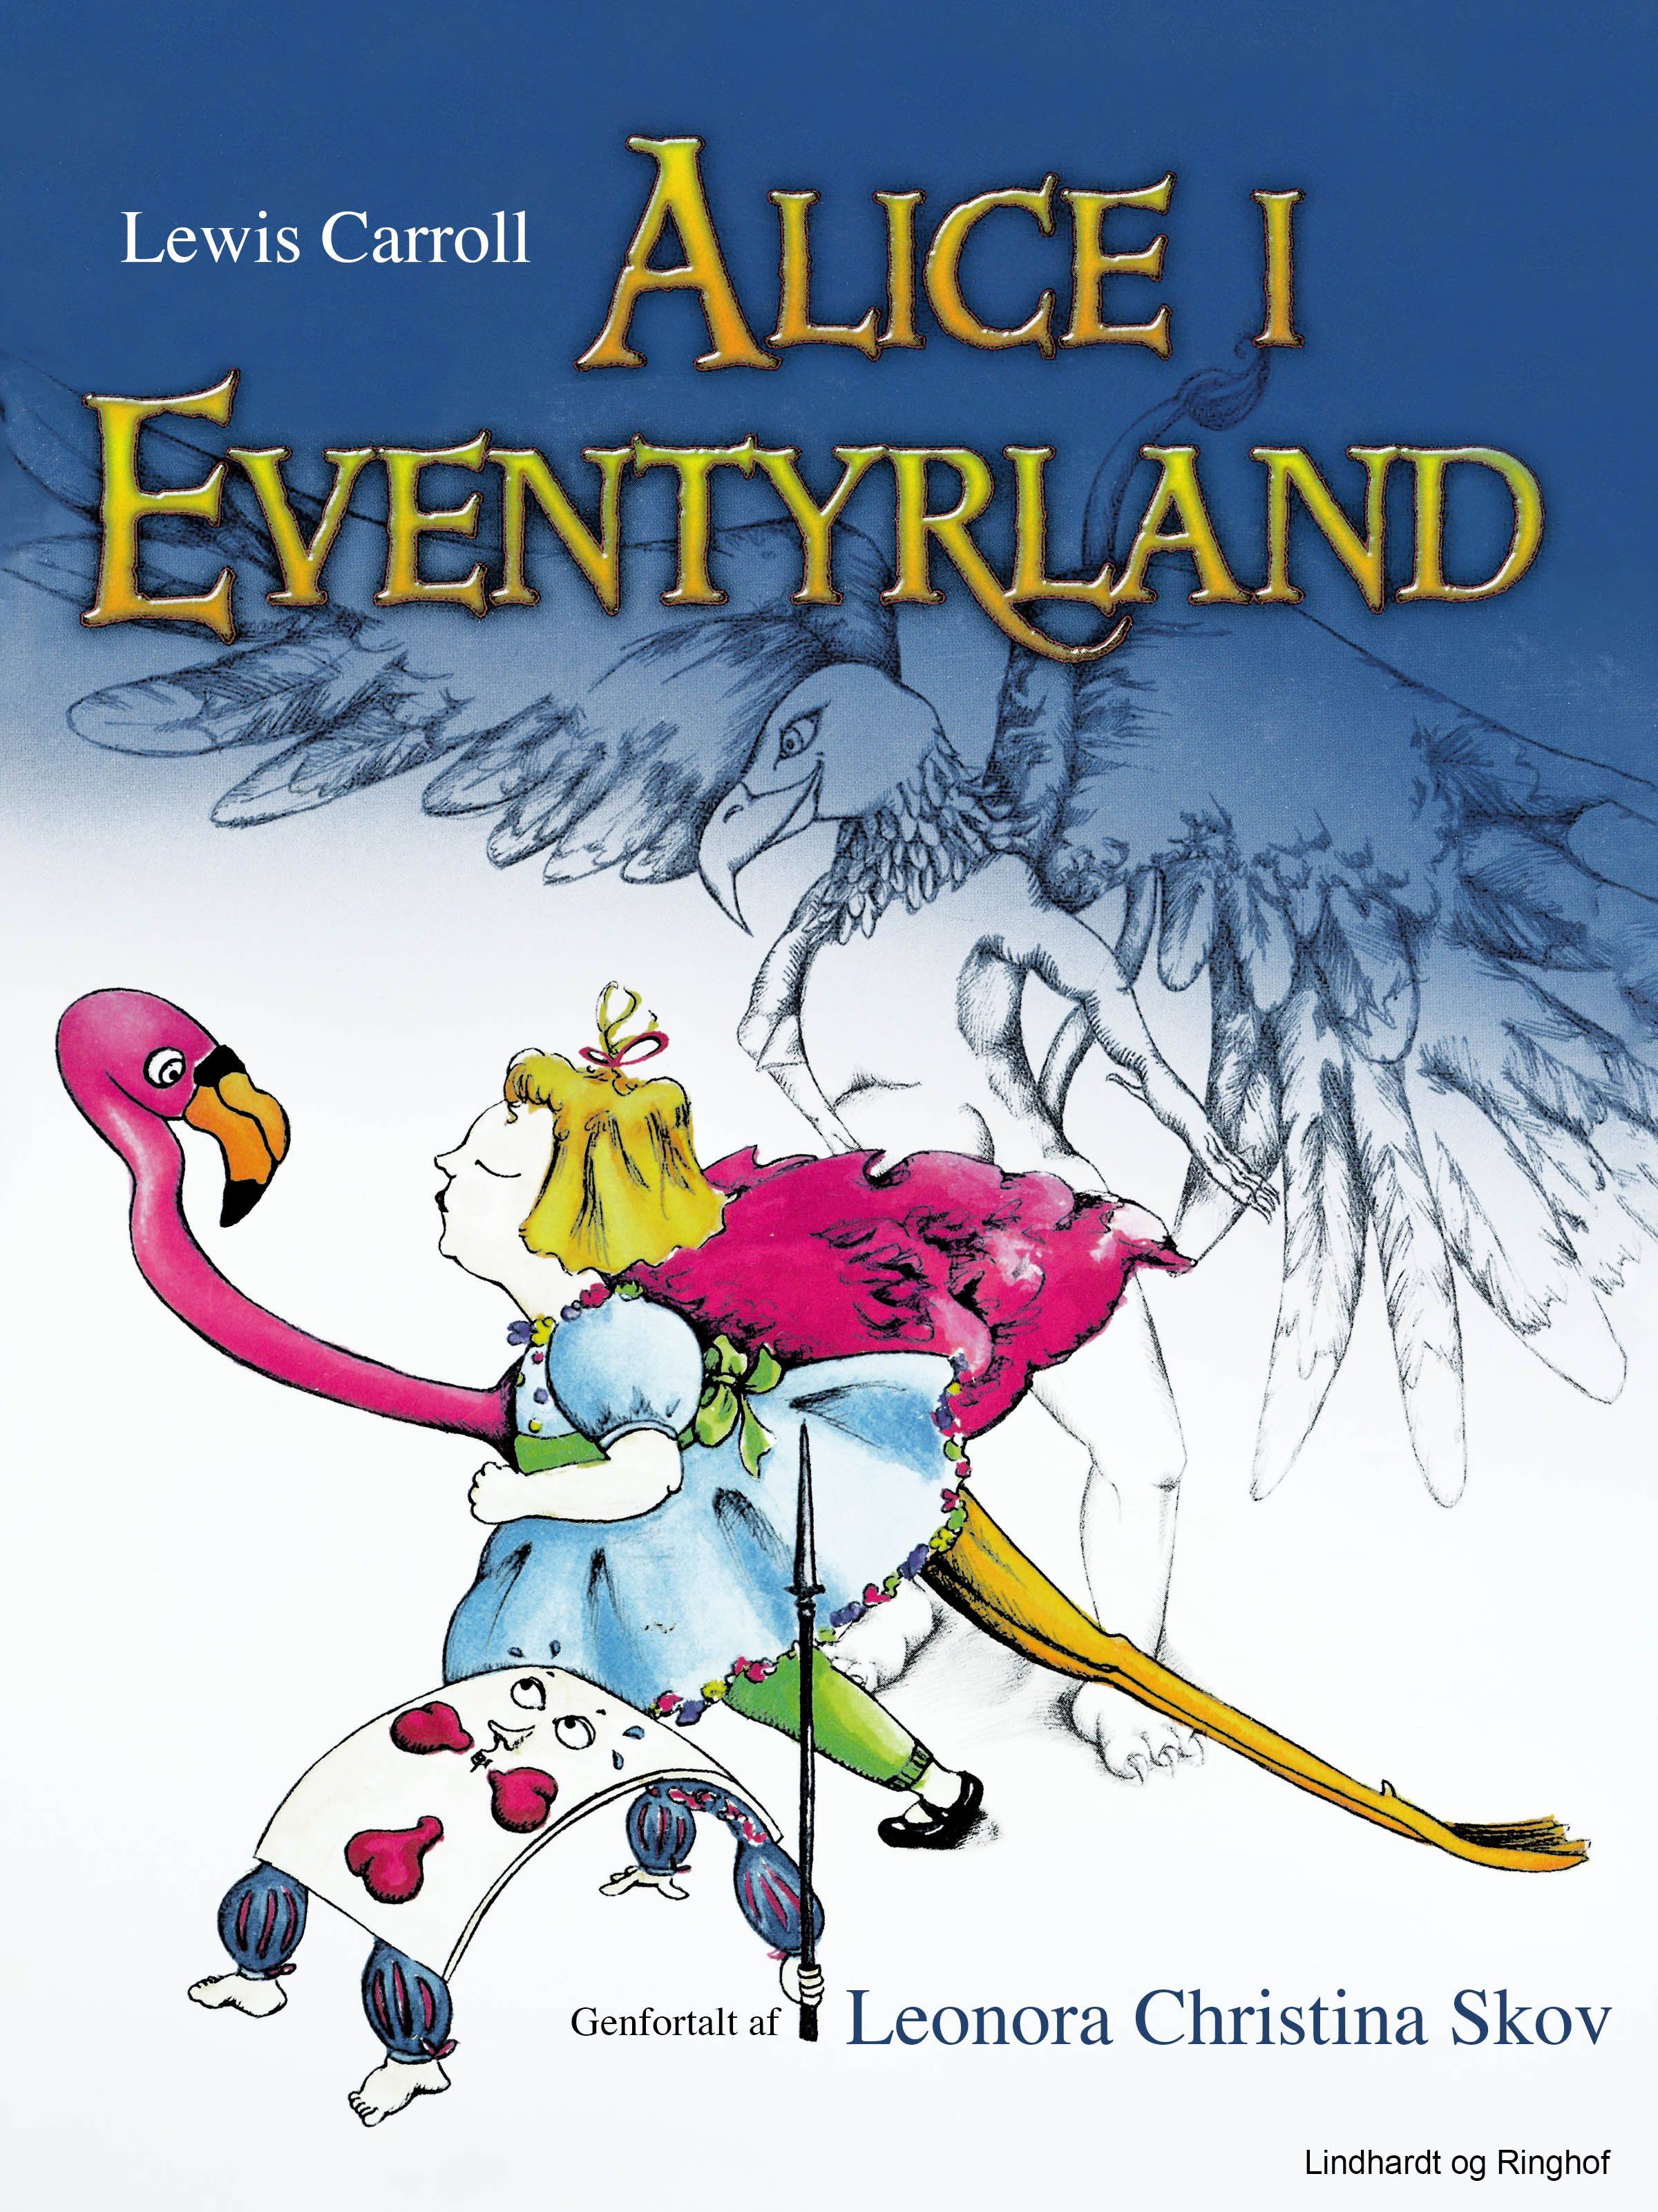 Alice i Eventyrland, eBook by Lewis Carroll, Leonora Christina Skov